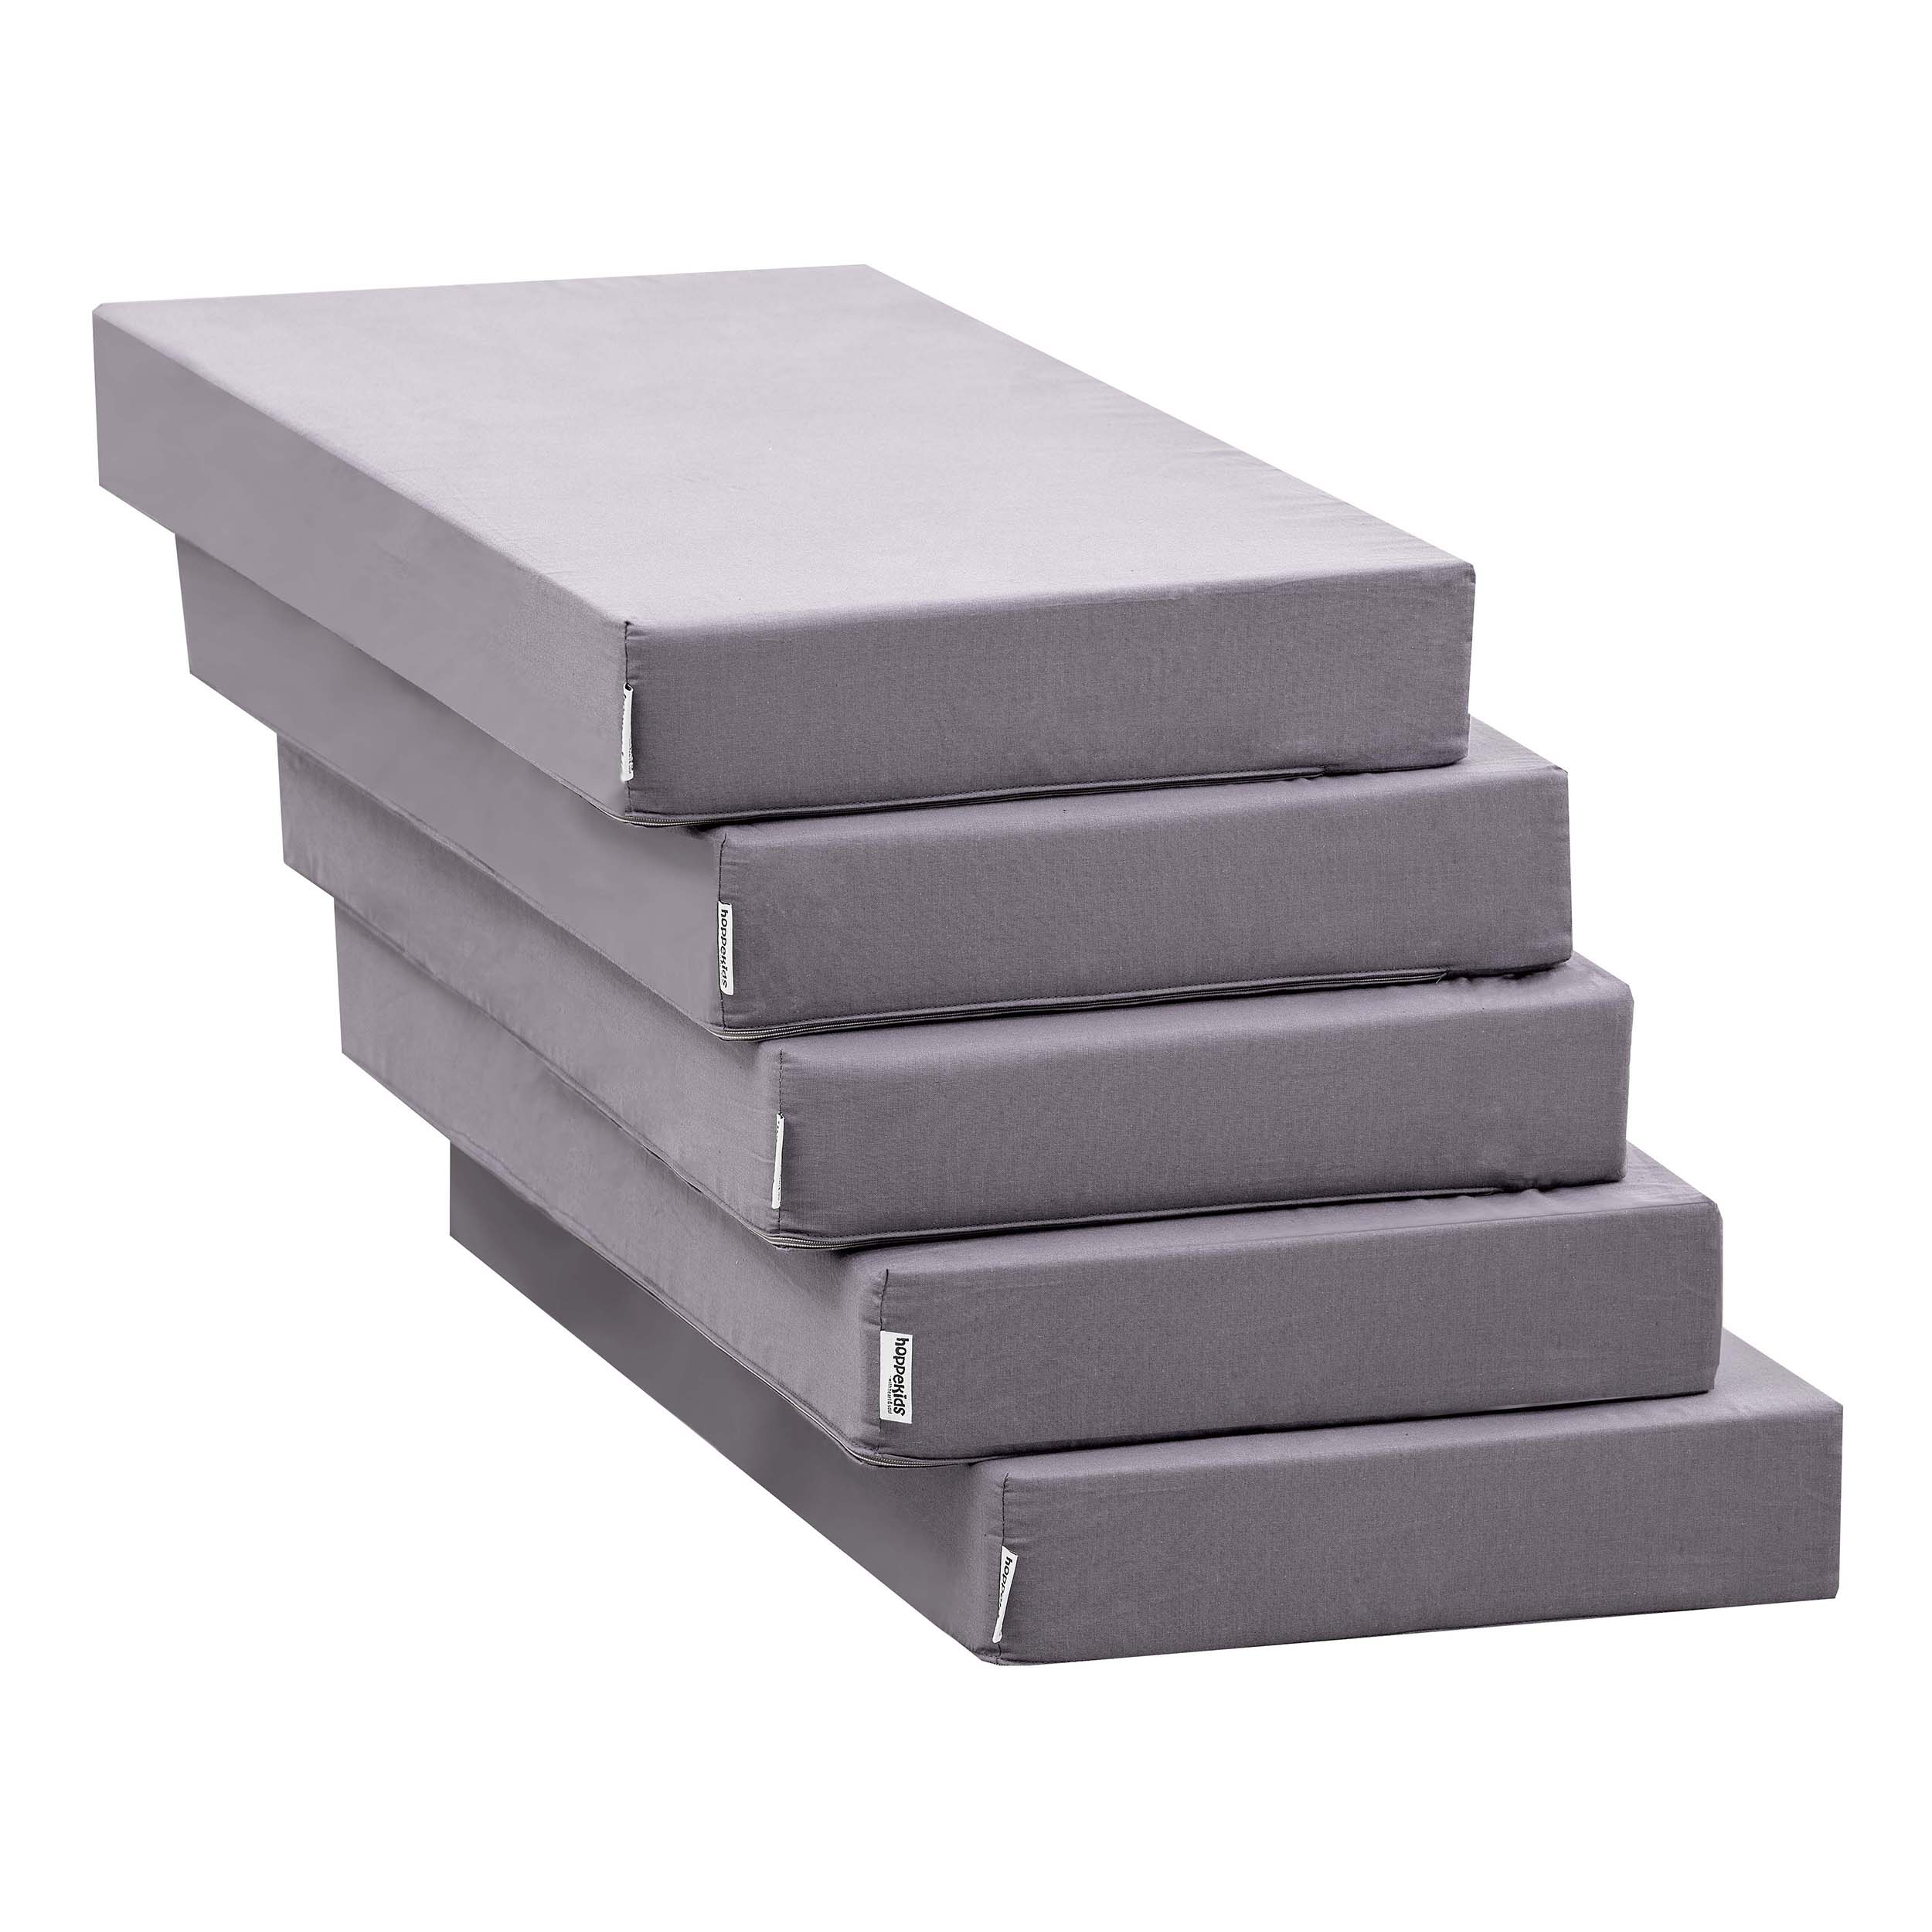 5-teilige Matratze für das Lounge-Modul in Granite Grey